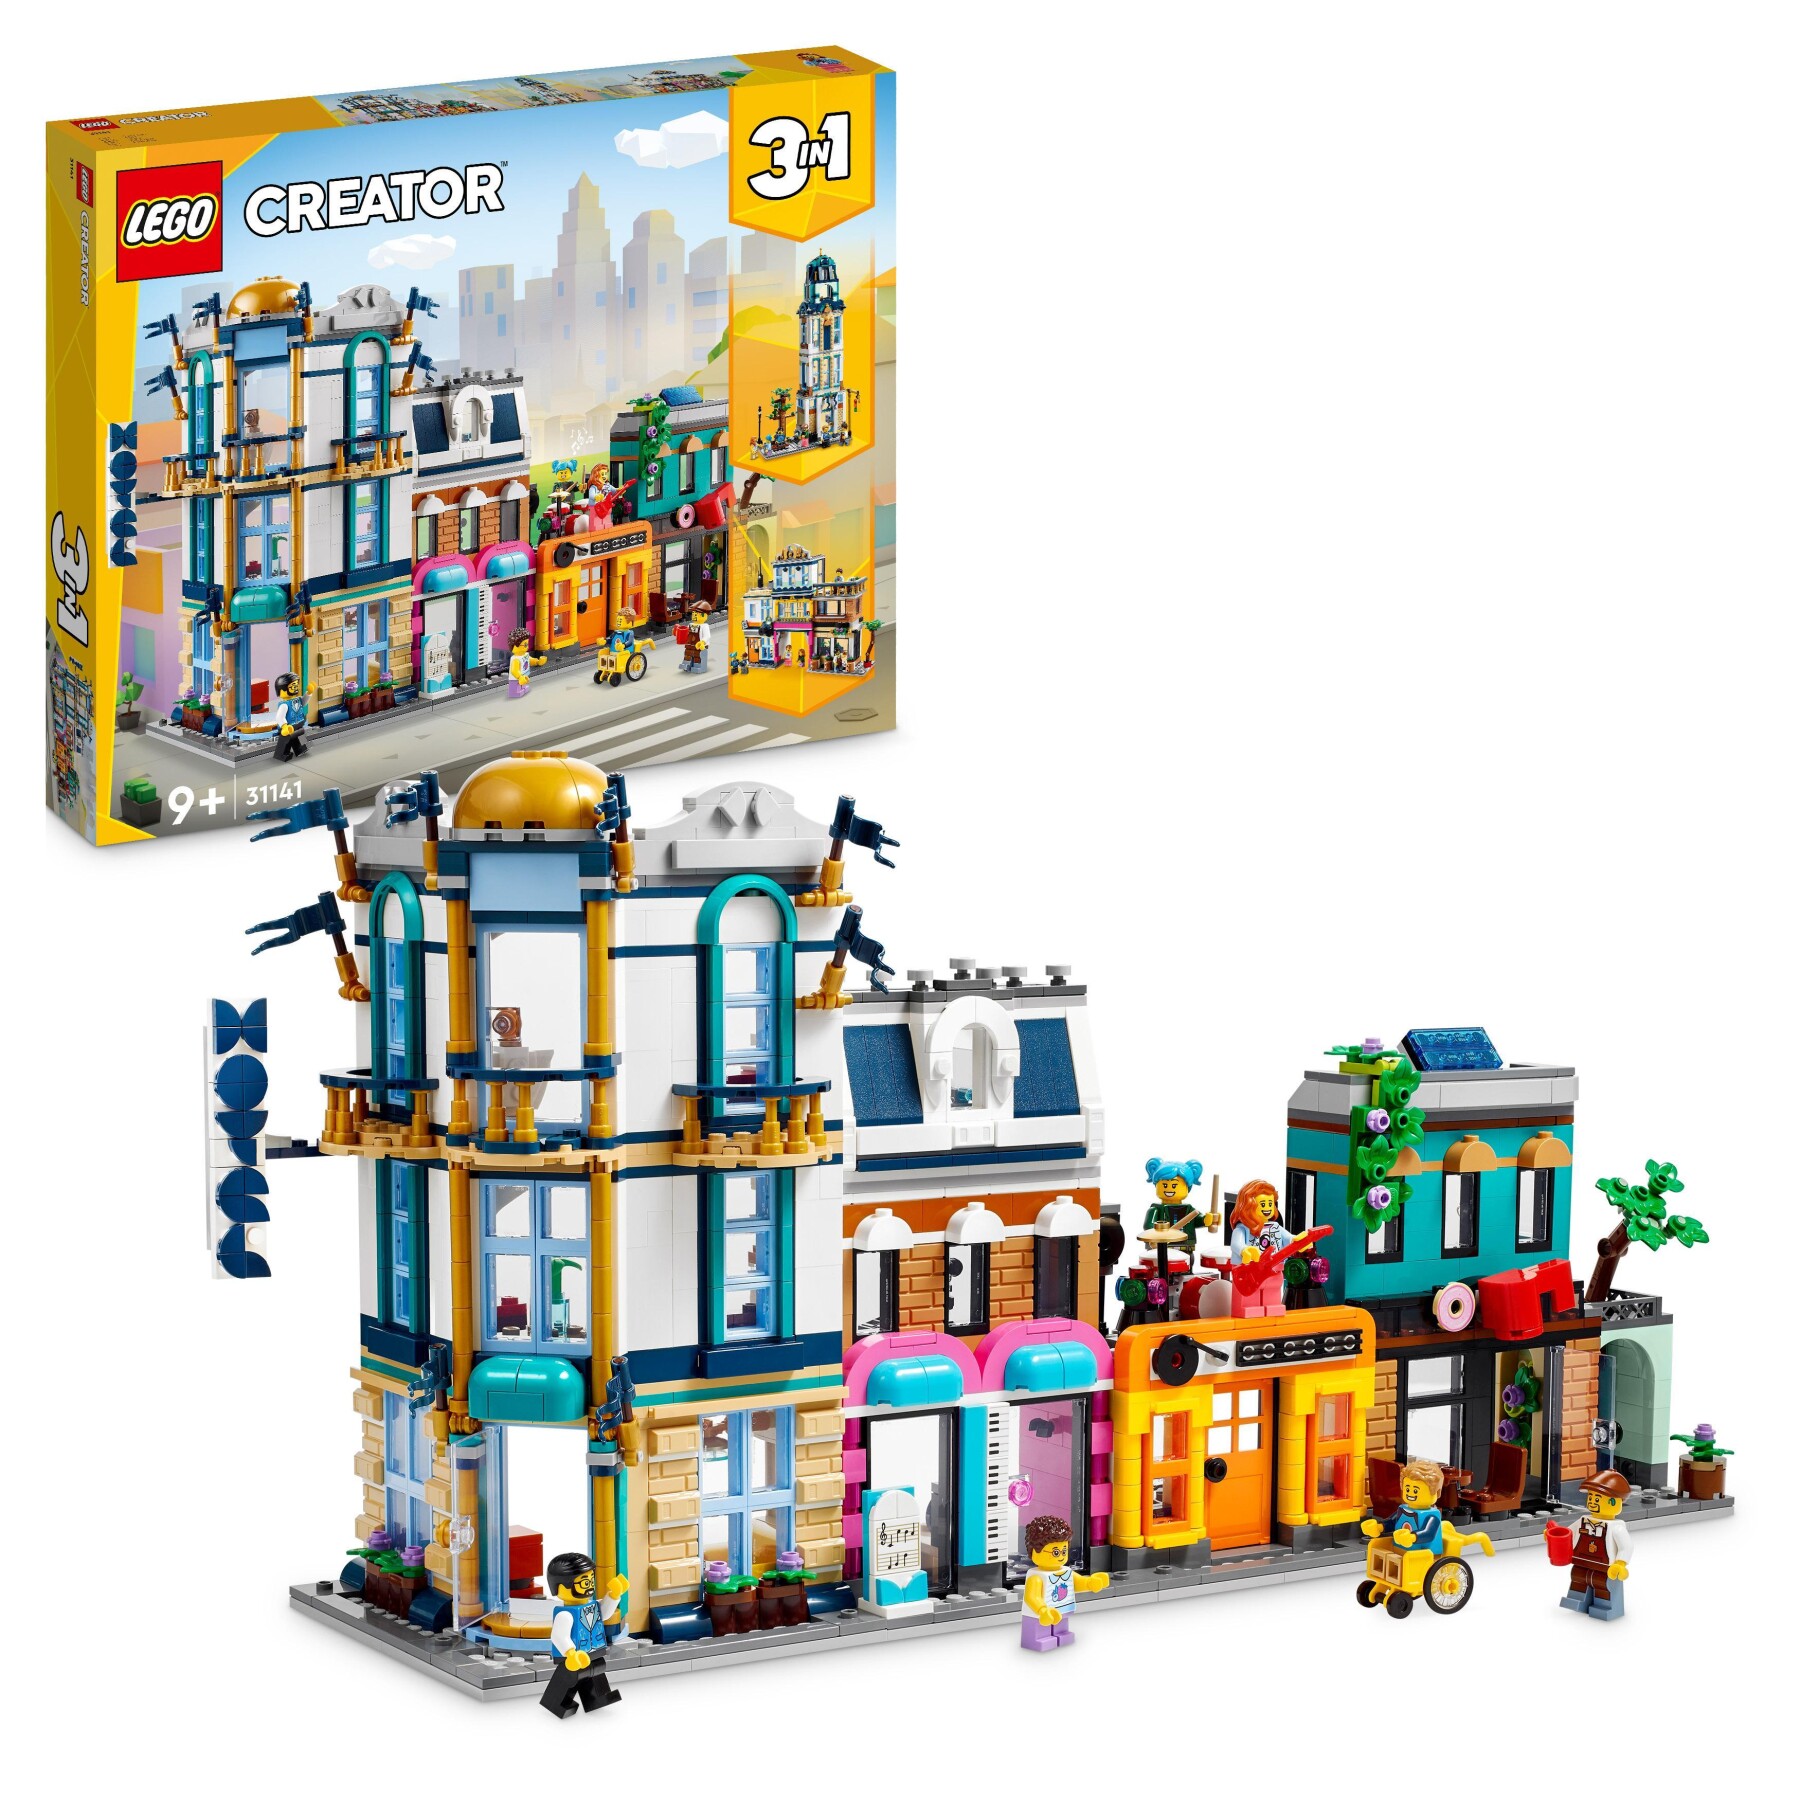 Lego creator 3in1 31141 strada principale, grattacielo art déco o strada del mercato, kit modellismo per costruzioni creative - LEGO CREATOR